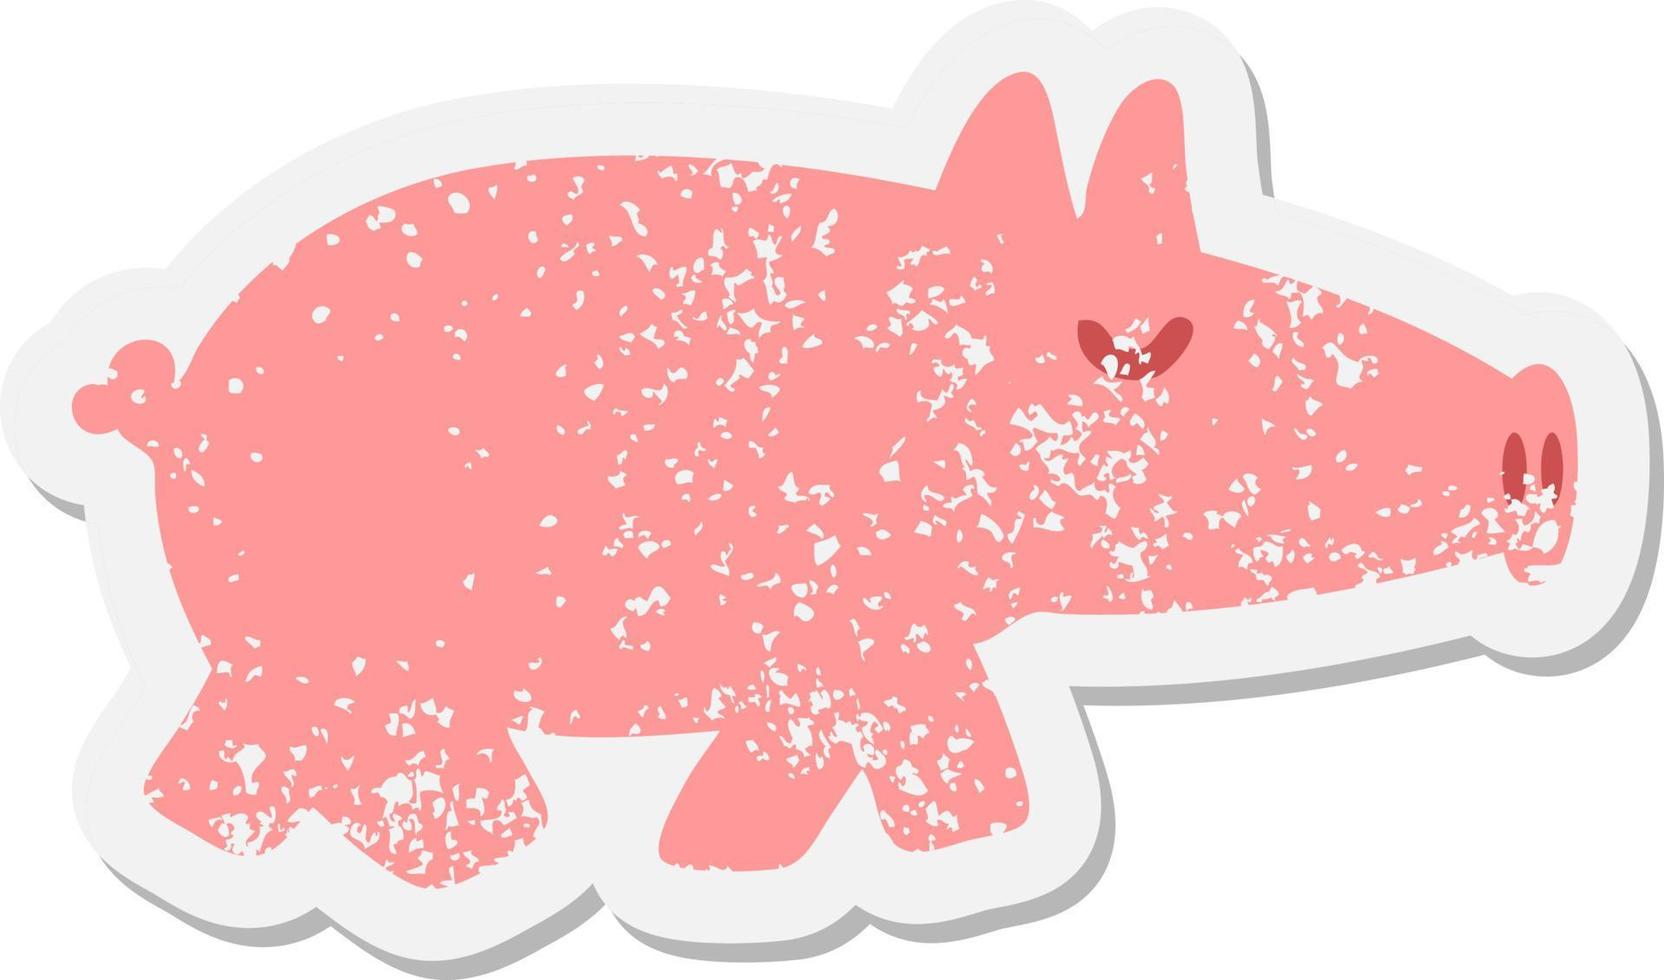 Schwein-Grunge-Aufkleber mit langer Schnauze vektor